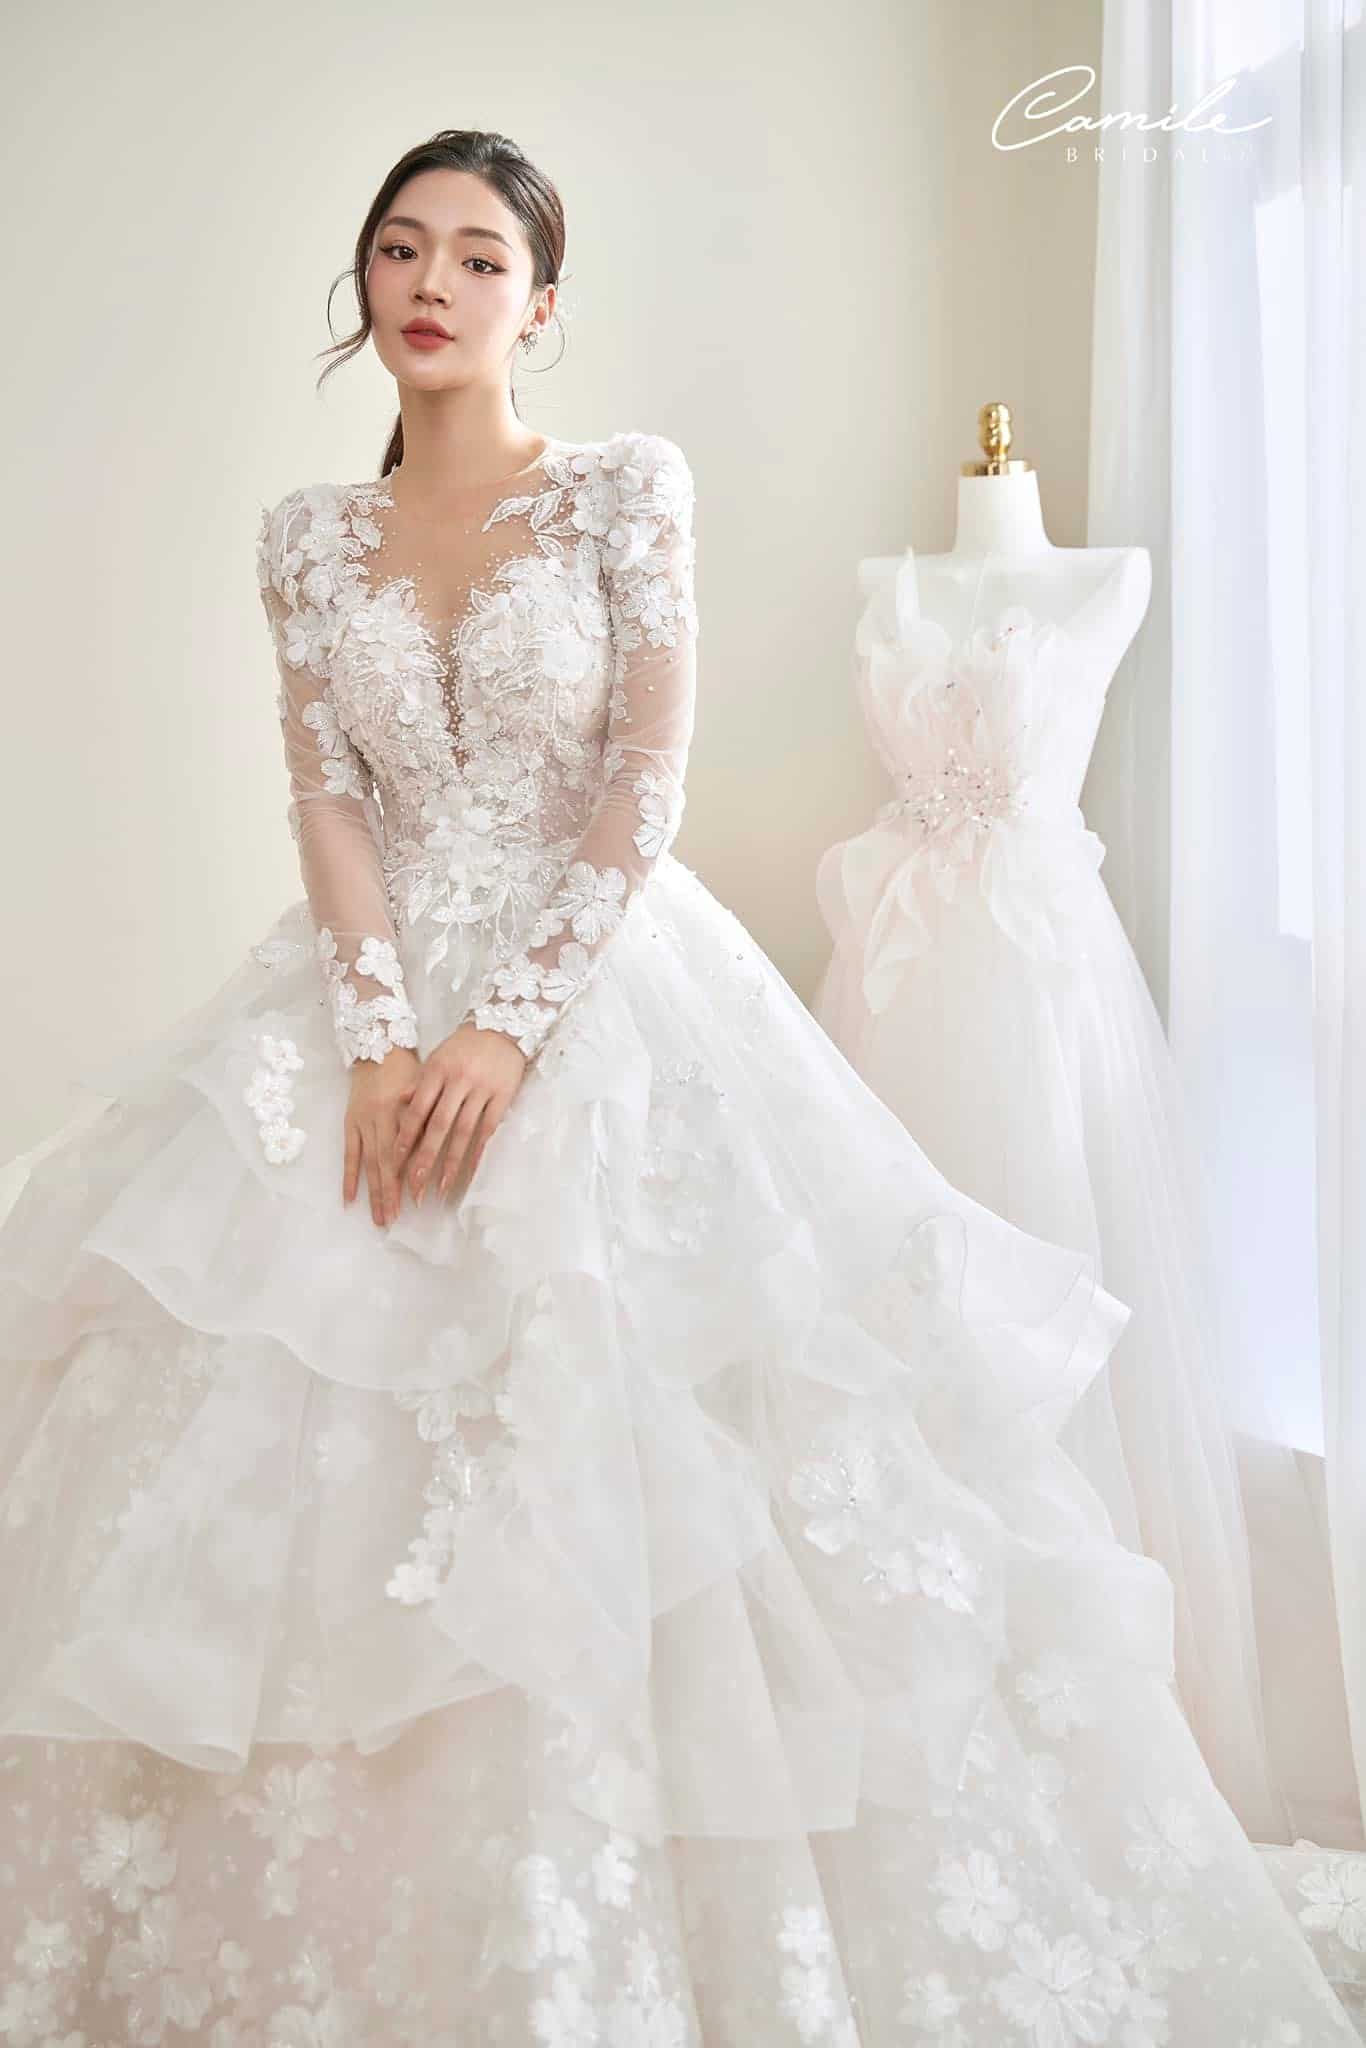 15 mẫu váy cưới xòe công chúa lộng lẫy, sang trọng cho cô dâu